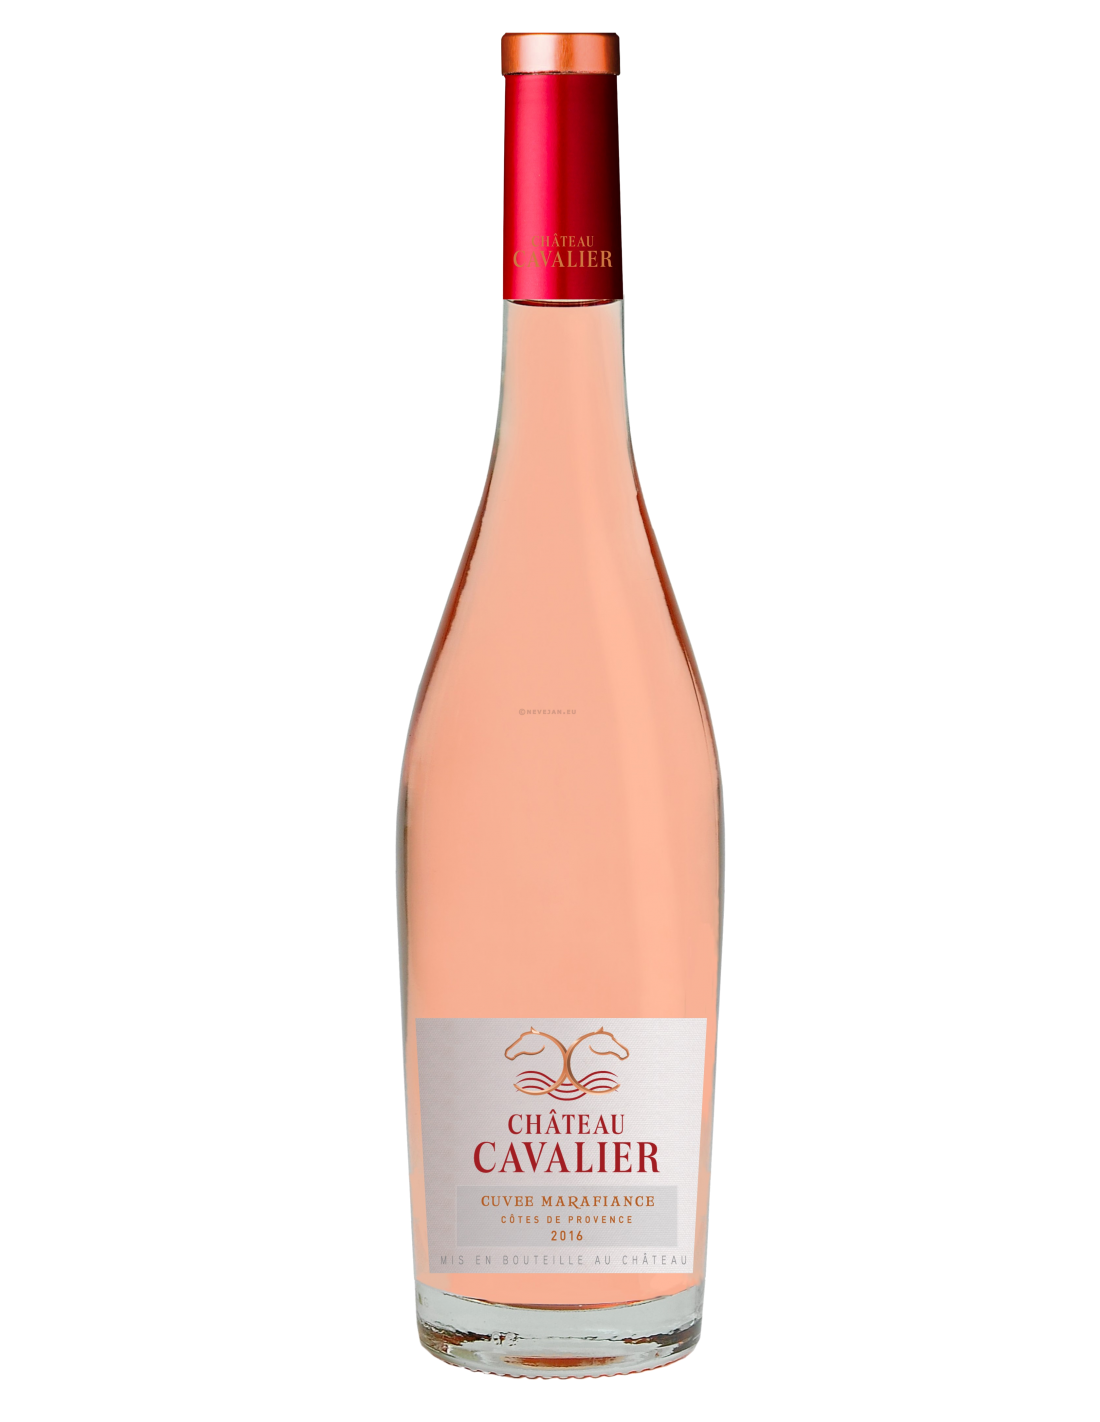 Vin roze sec, Chateau Cavalier Cuvée Marafiance, Côtes de Provence, 0.75L, 12.5% alc., Franta alcooldiscount.ro